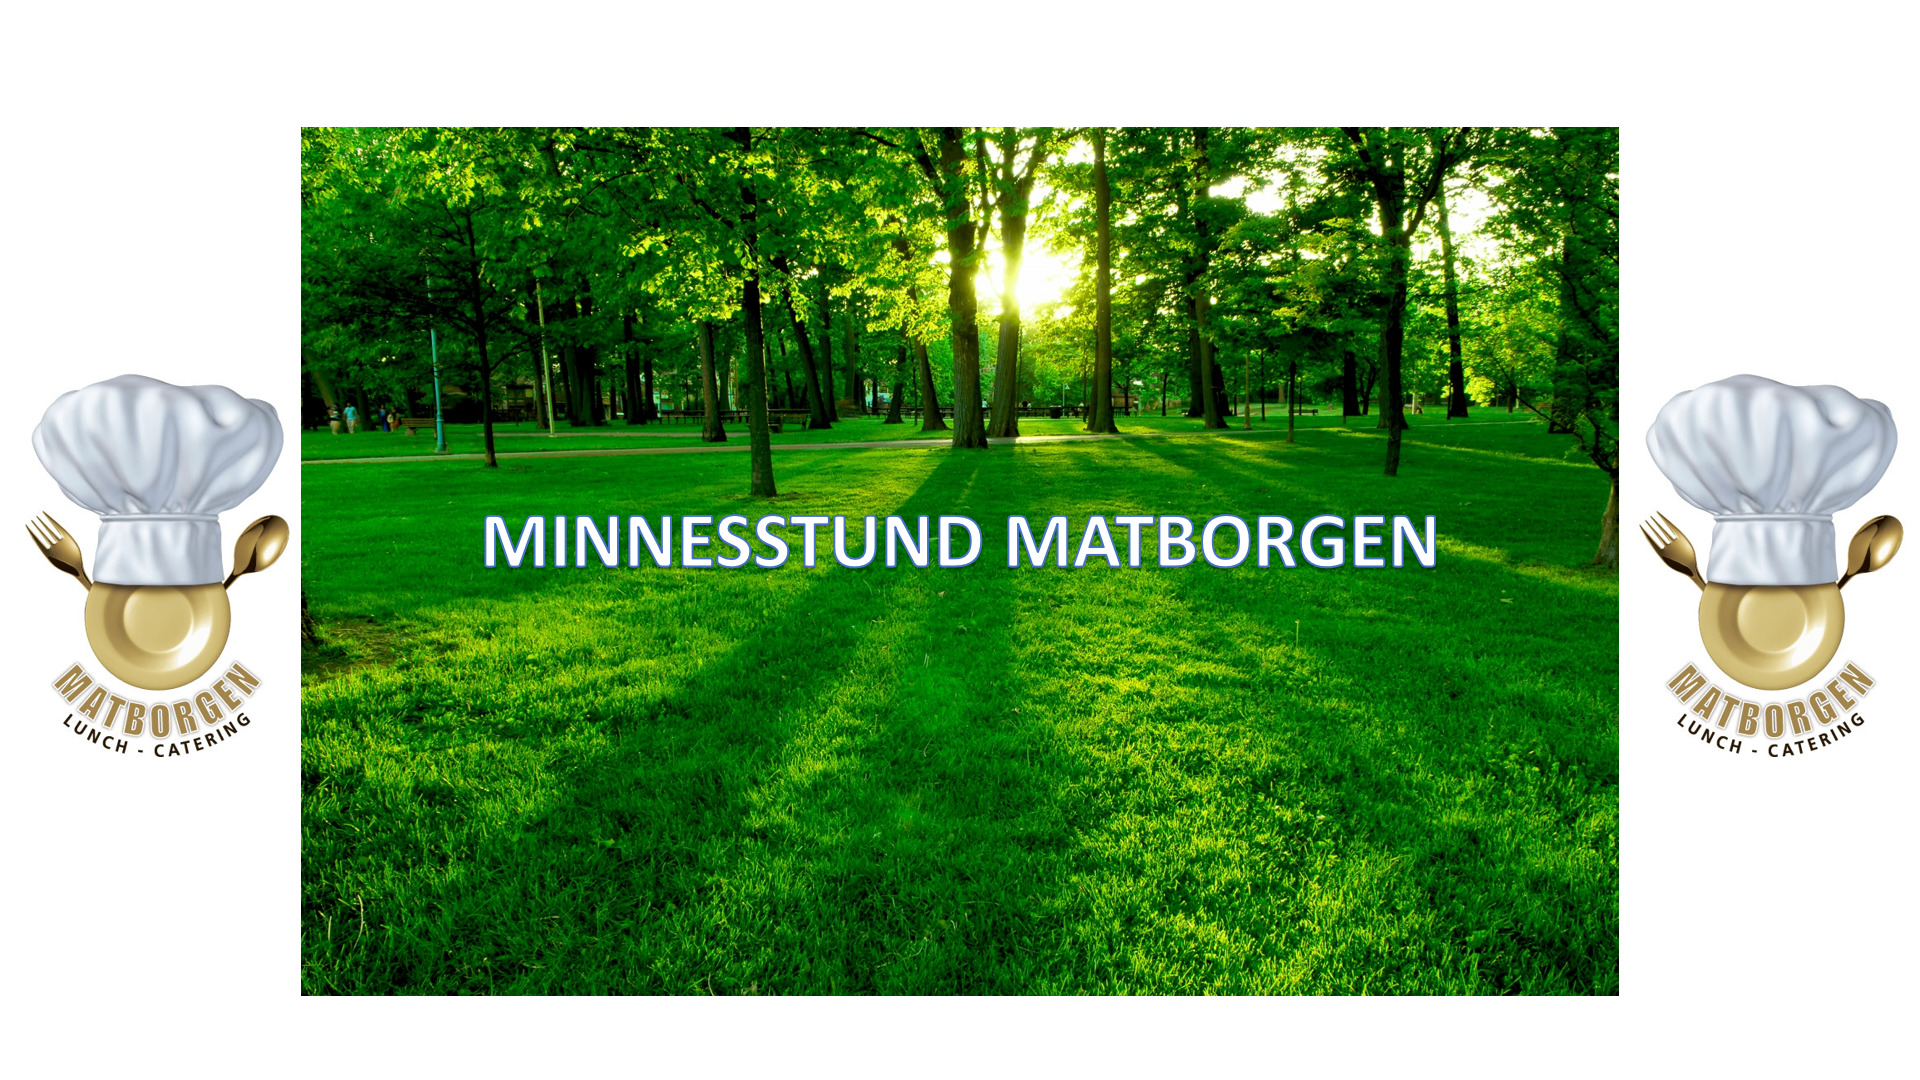 www.matborgen.se